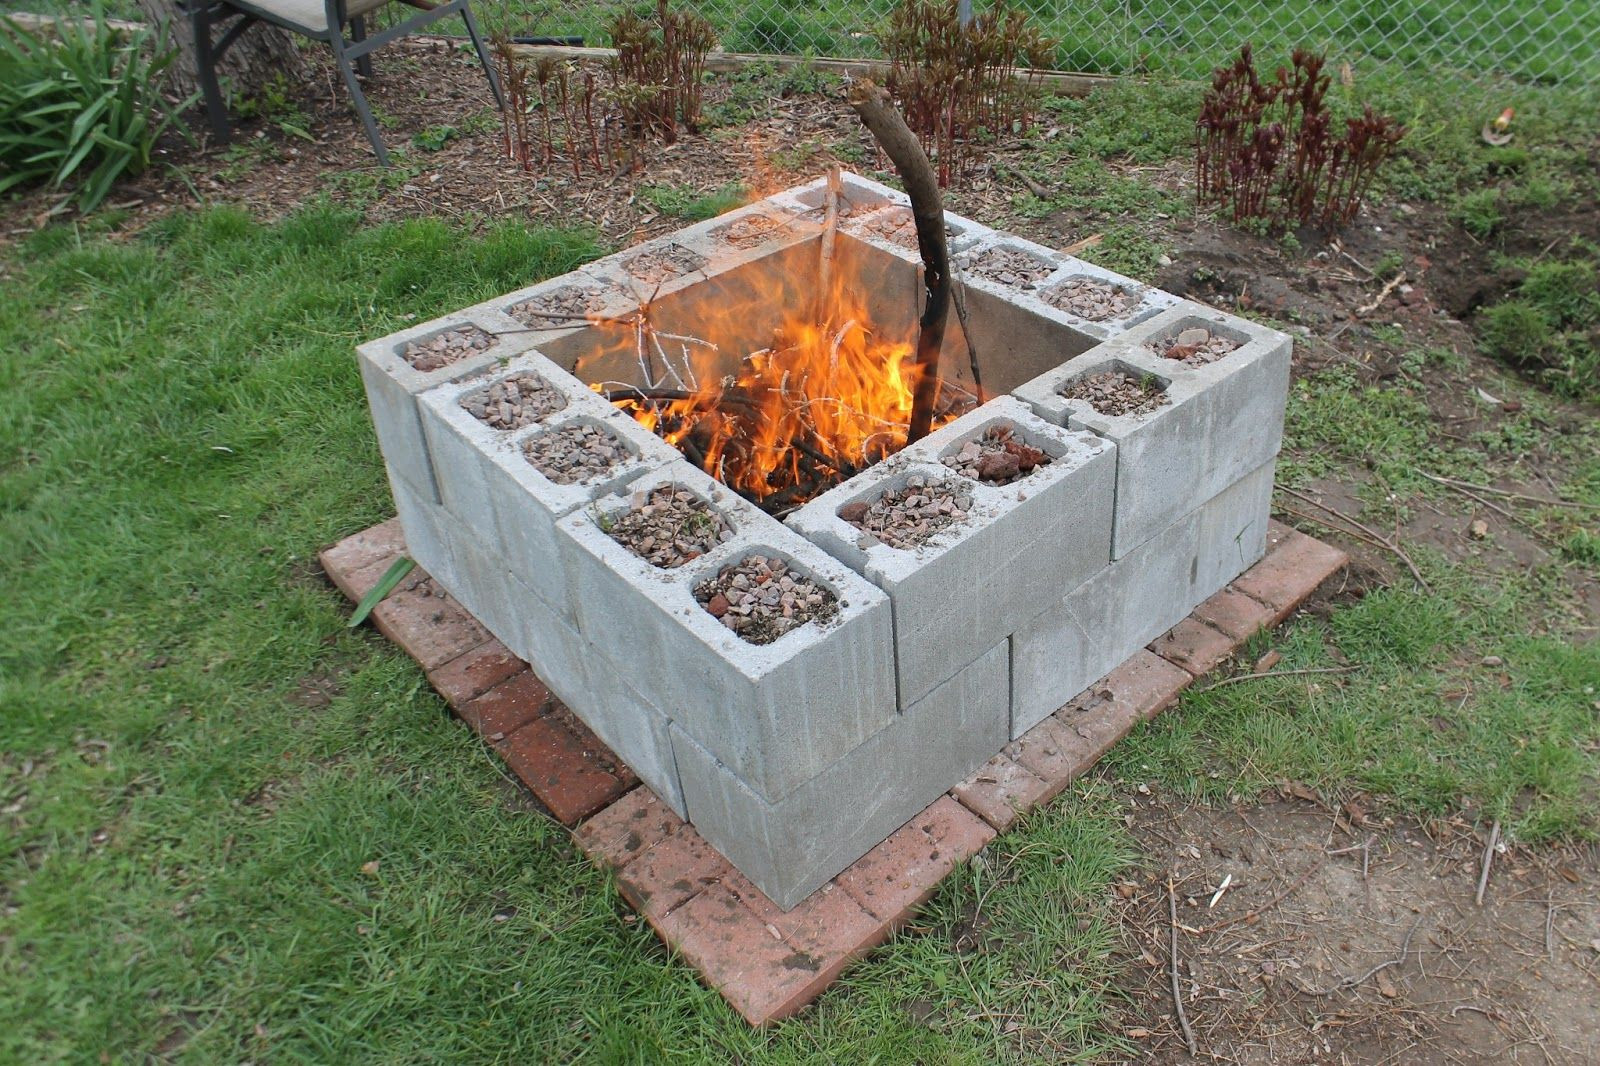 Best ideas about Backyard Fire Pit Ideas DIY
. Save or Pin 17 DIY Fire Pit Ideas for Your Backyard Now.